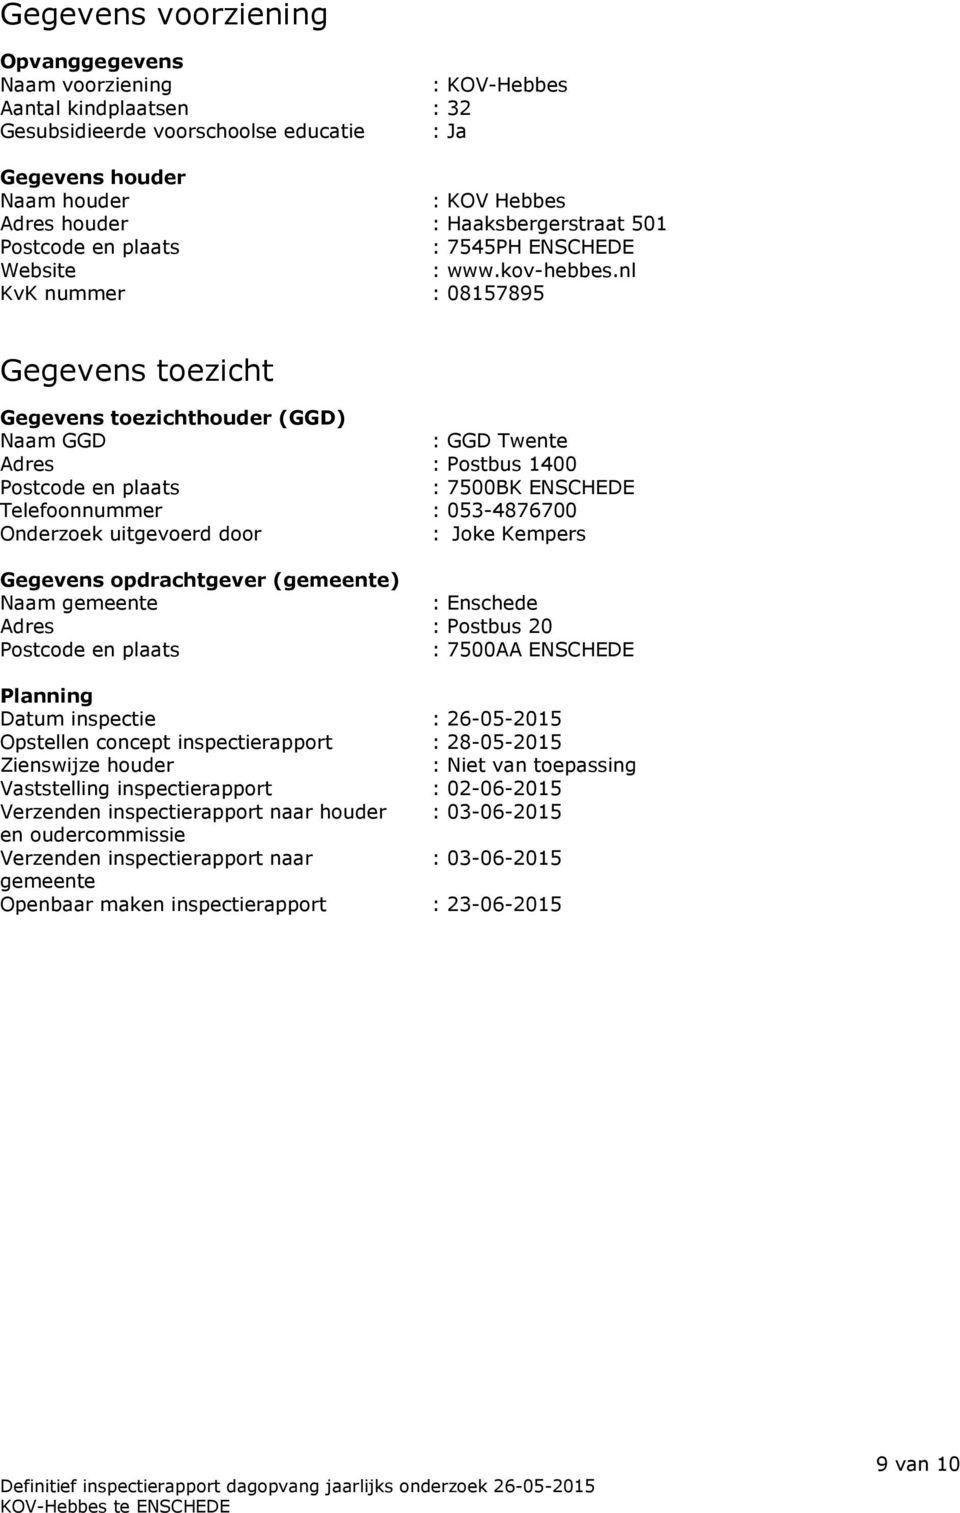 nl KvK nummer : 08157895 Gegevens toezicht Gegevens toezichthouder (GGD) Naam GGD : GGD Twente Adres : Postbus 1400 Postcode en plaats : 7500BK ENSCHEDE Telefoonnummer : 053-4876700 Onderzoek